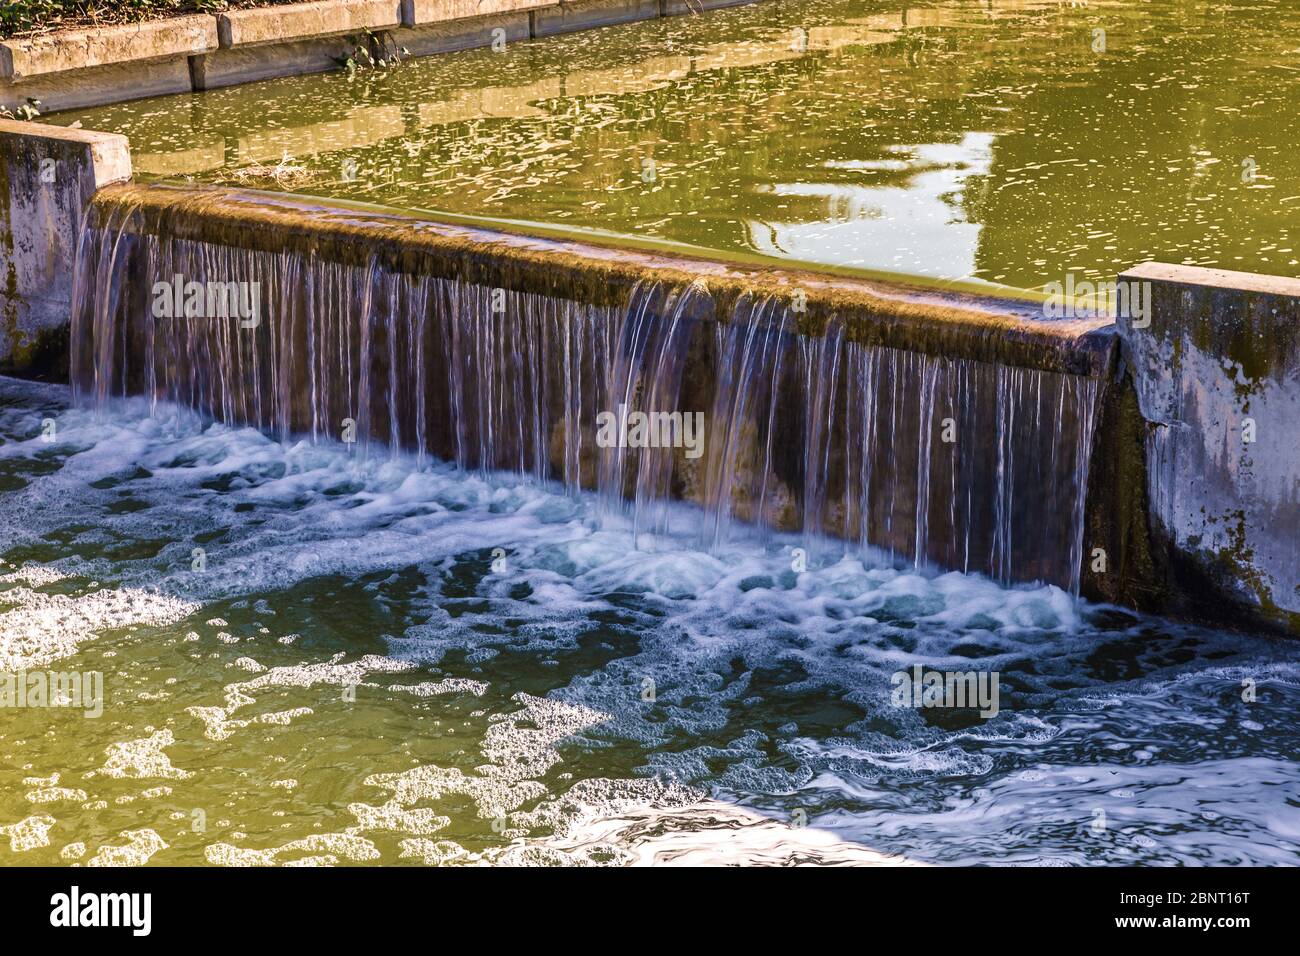 l'acqua che cade attraverso una diga ornamentale in un fiume artificiale nel parco pubblico Foto Stock